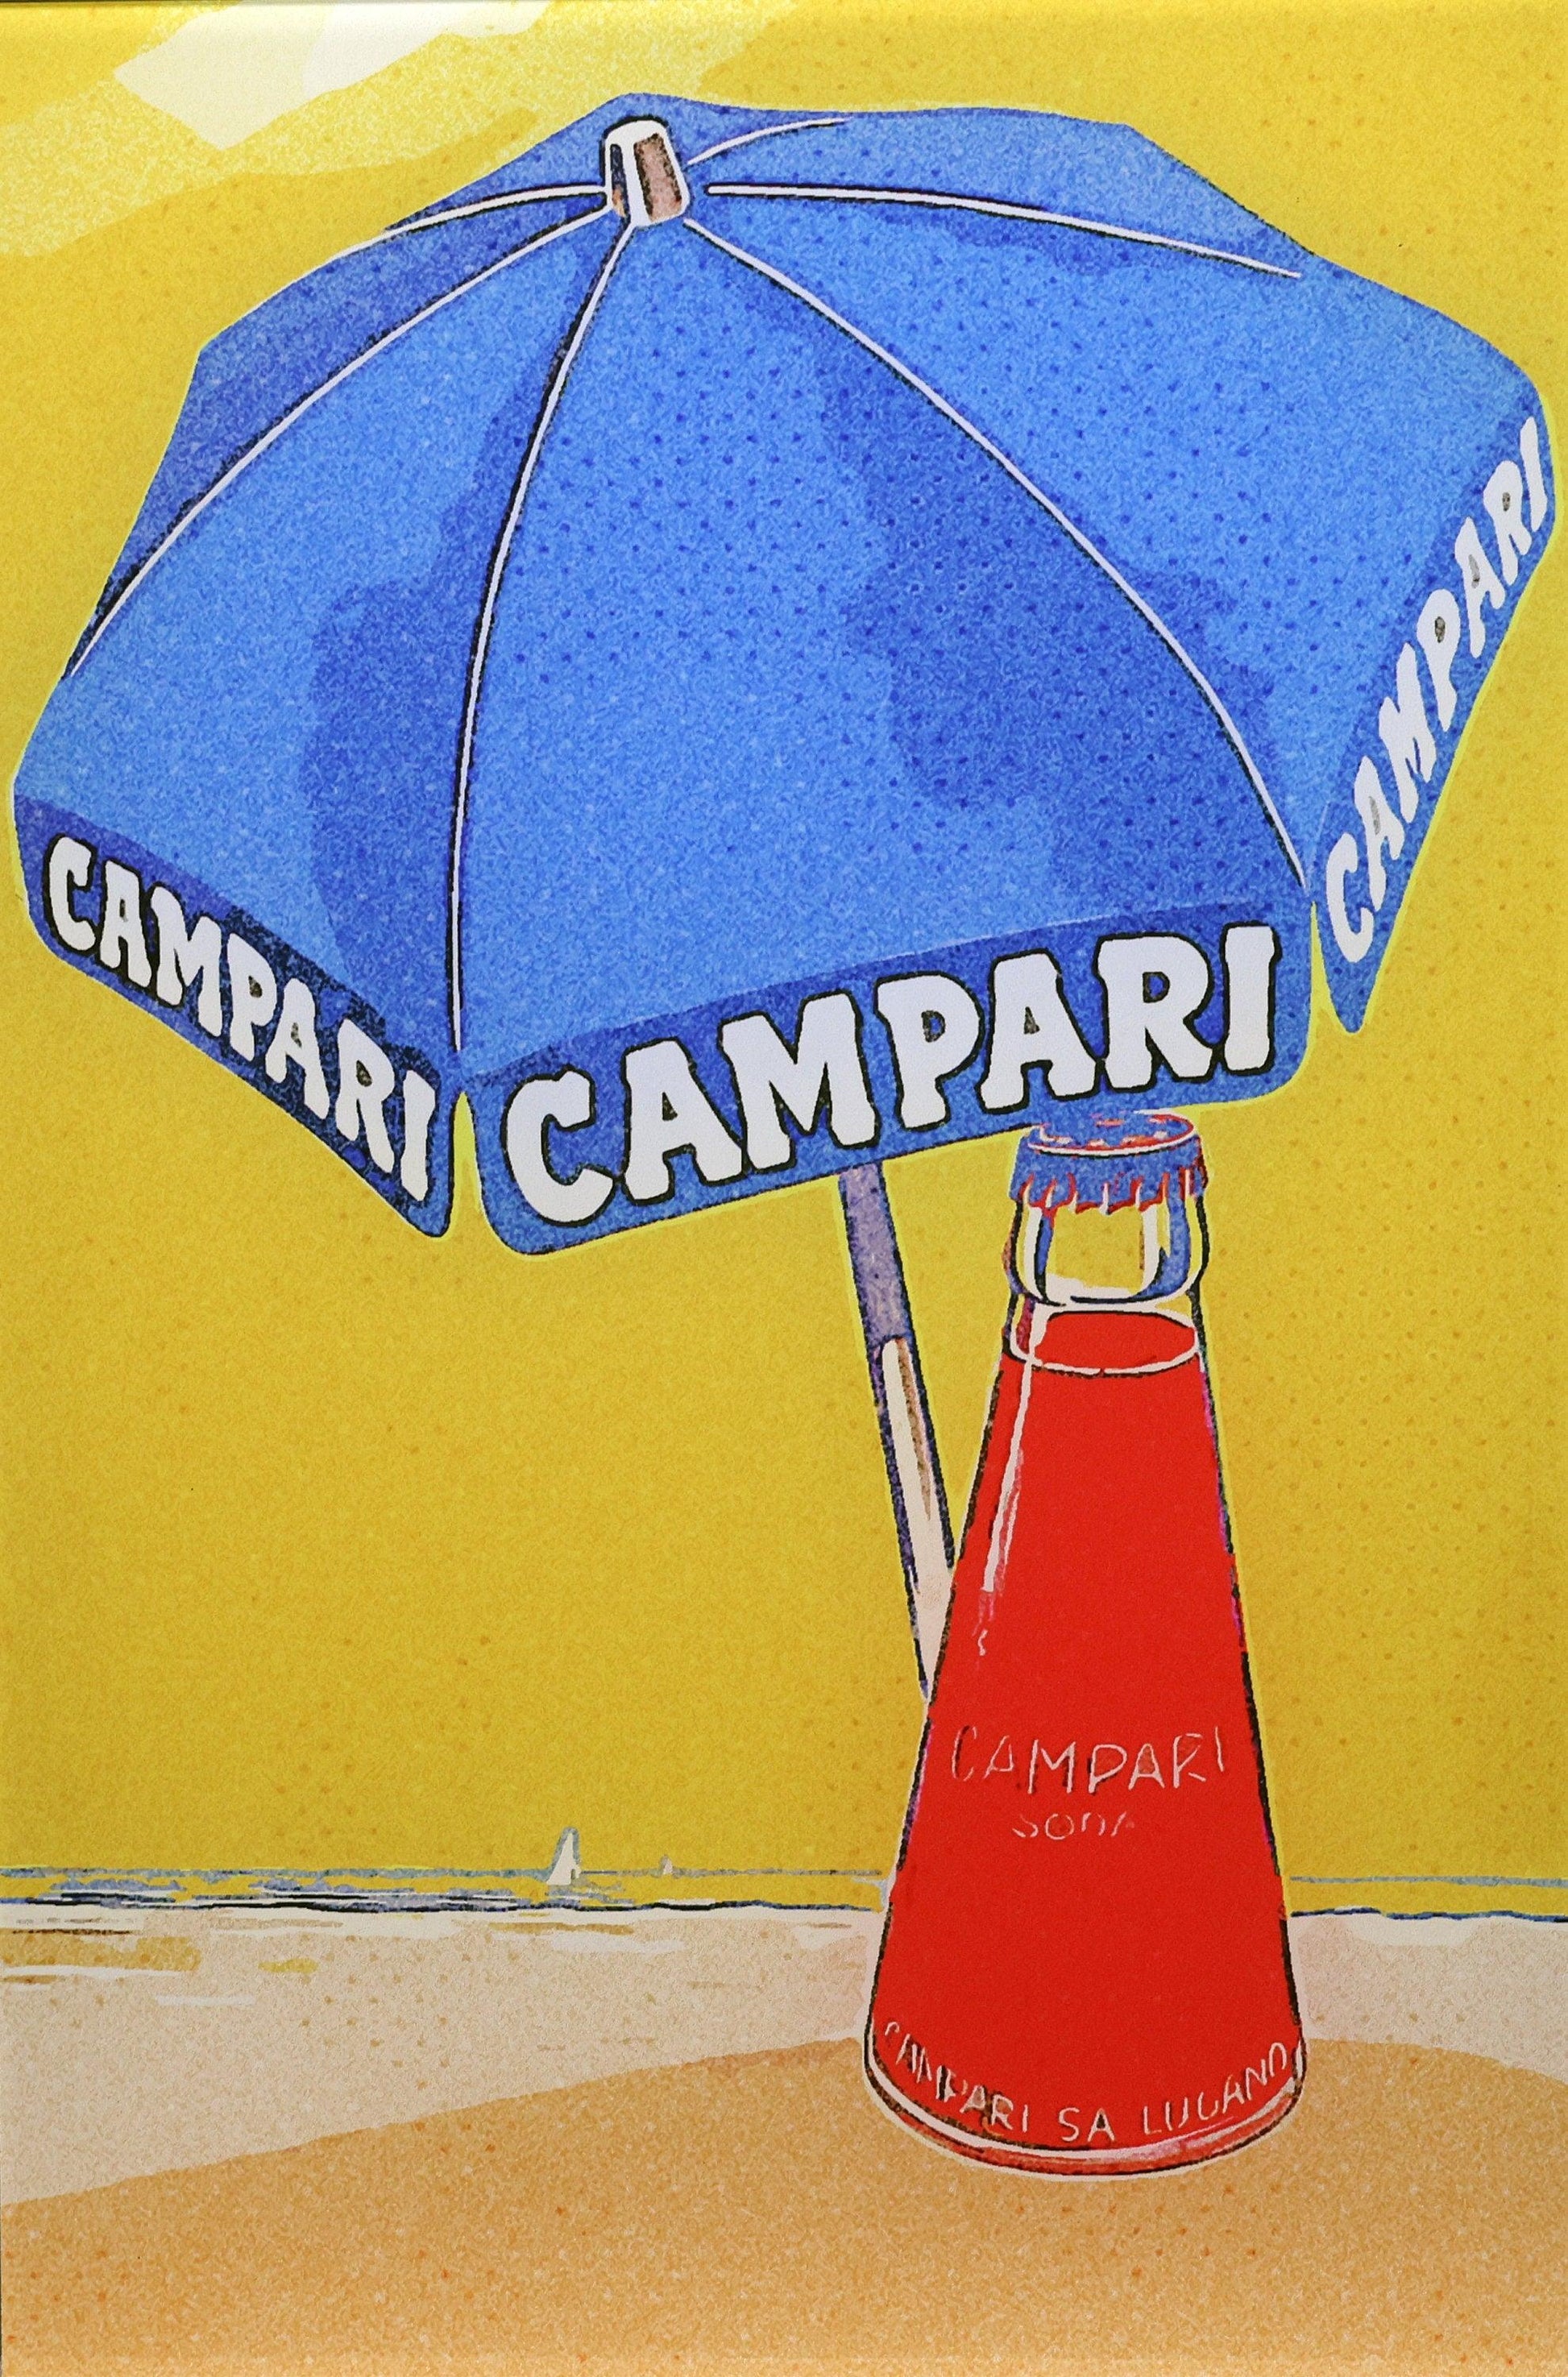 Campari Werbung auf Acrylglas - Pixel Cafe Cologne Acrylbild, Campari, Digitale Kunst, Digitale Zeichnung, Werbung, Zeichnung